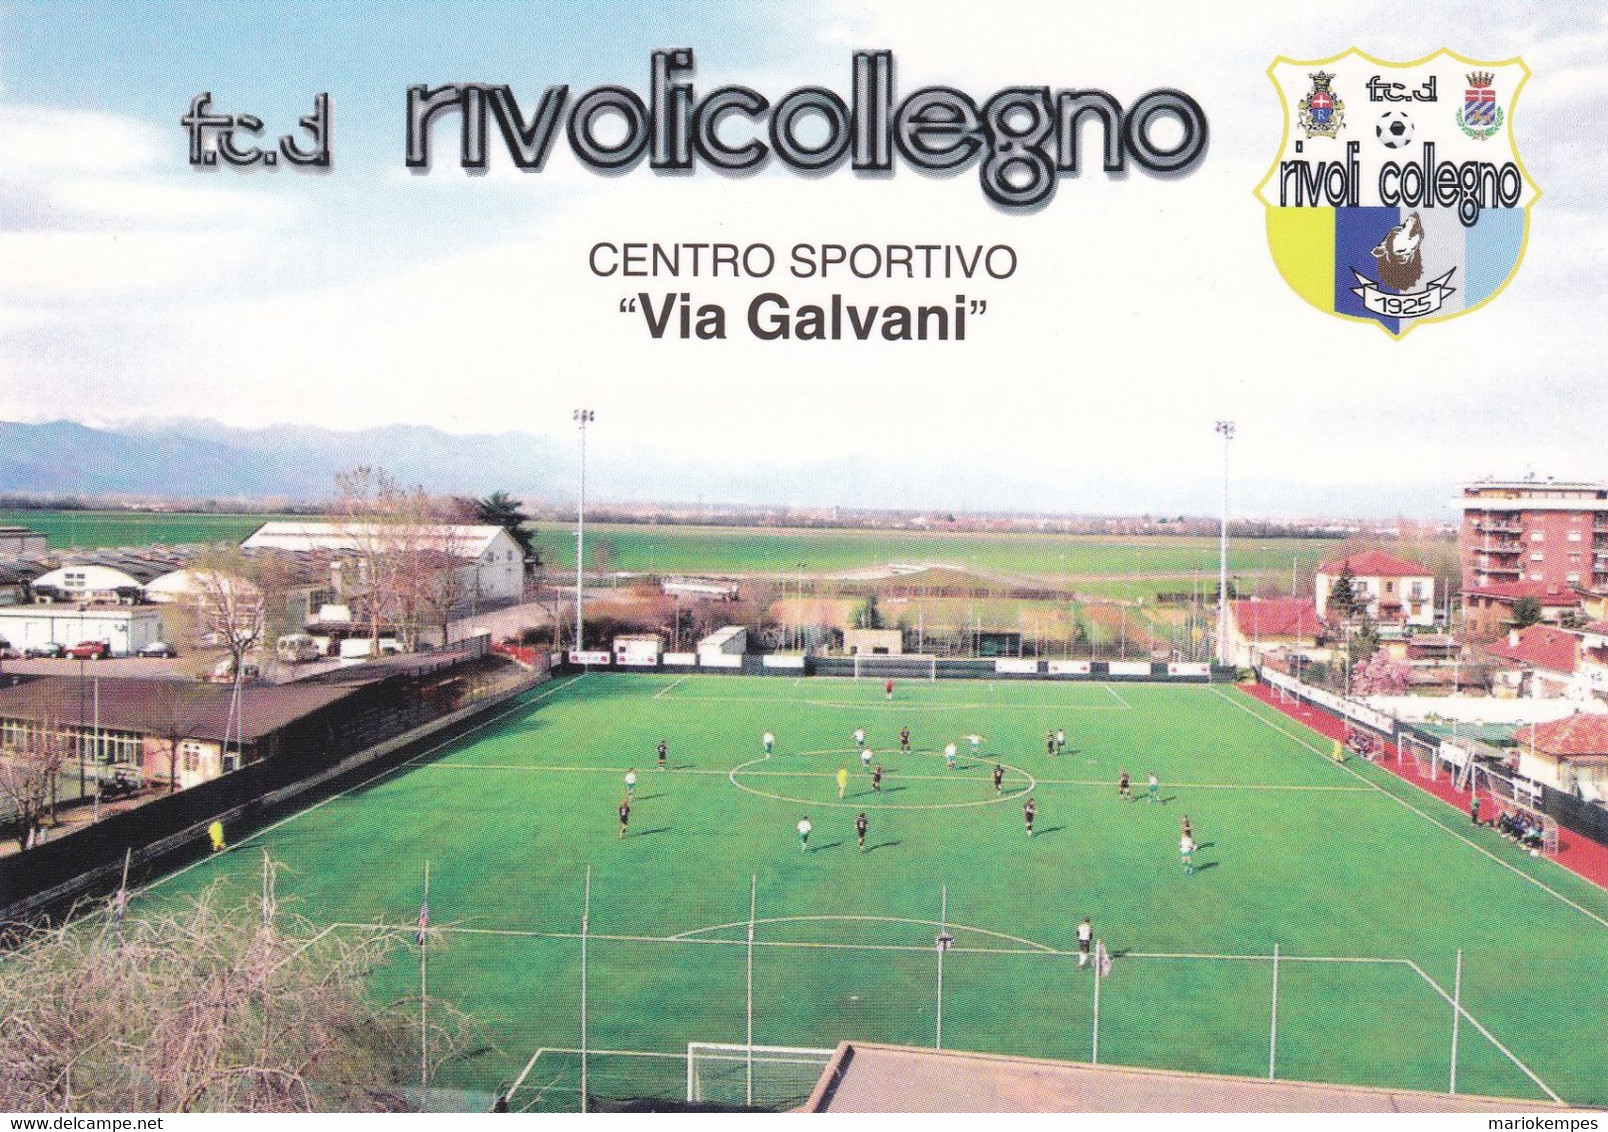 COLLEGNO ( TO )_F.C.D. RIVOLICOLLEGNO_CENTRO SPORTIVO "VIA GALVANI" _Stadium_Stade_Estadio_Stadion - Stadiums & Sporting Infrastructures